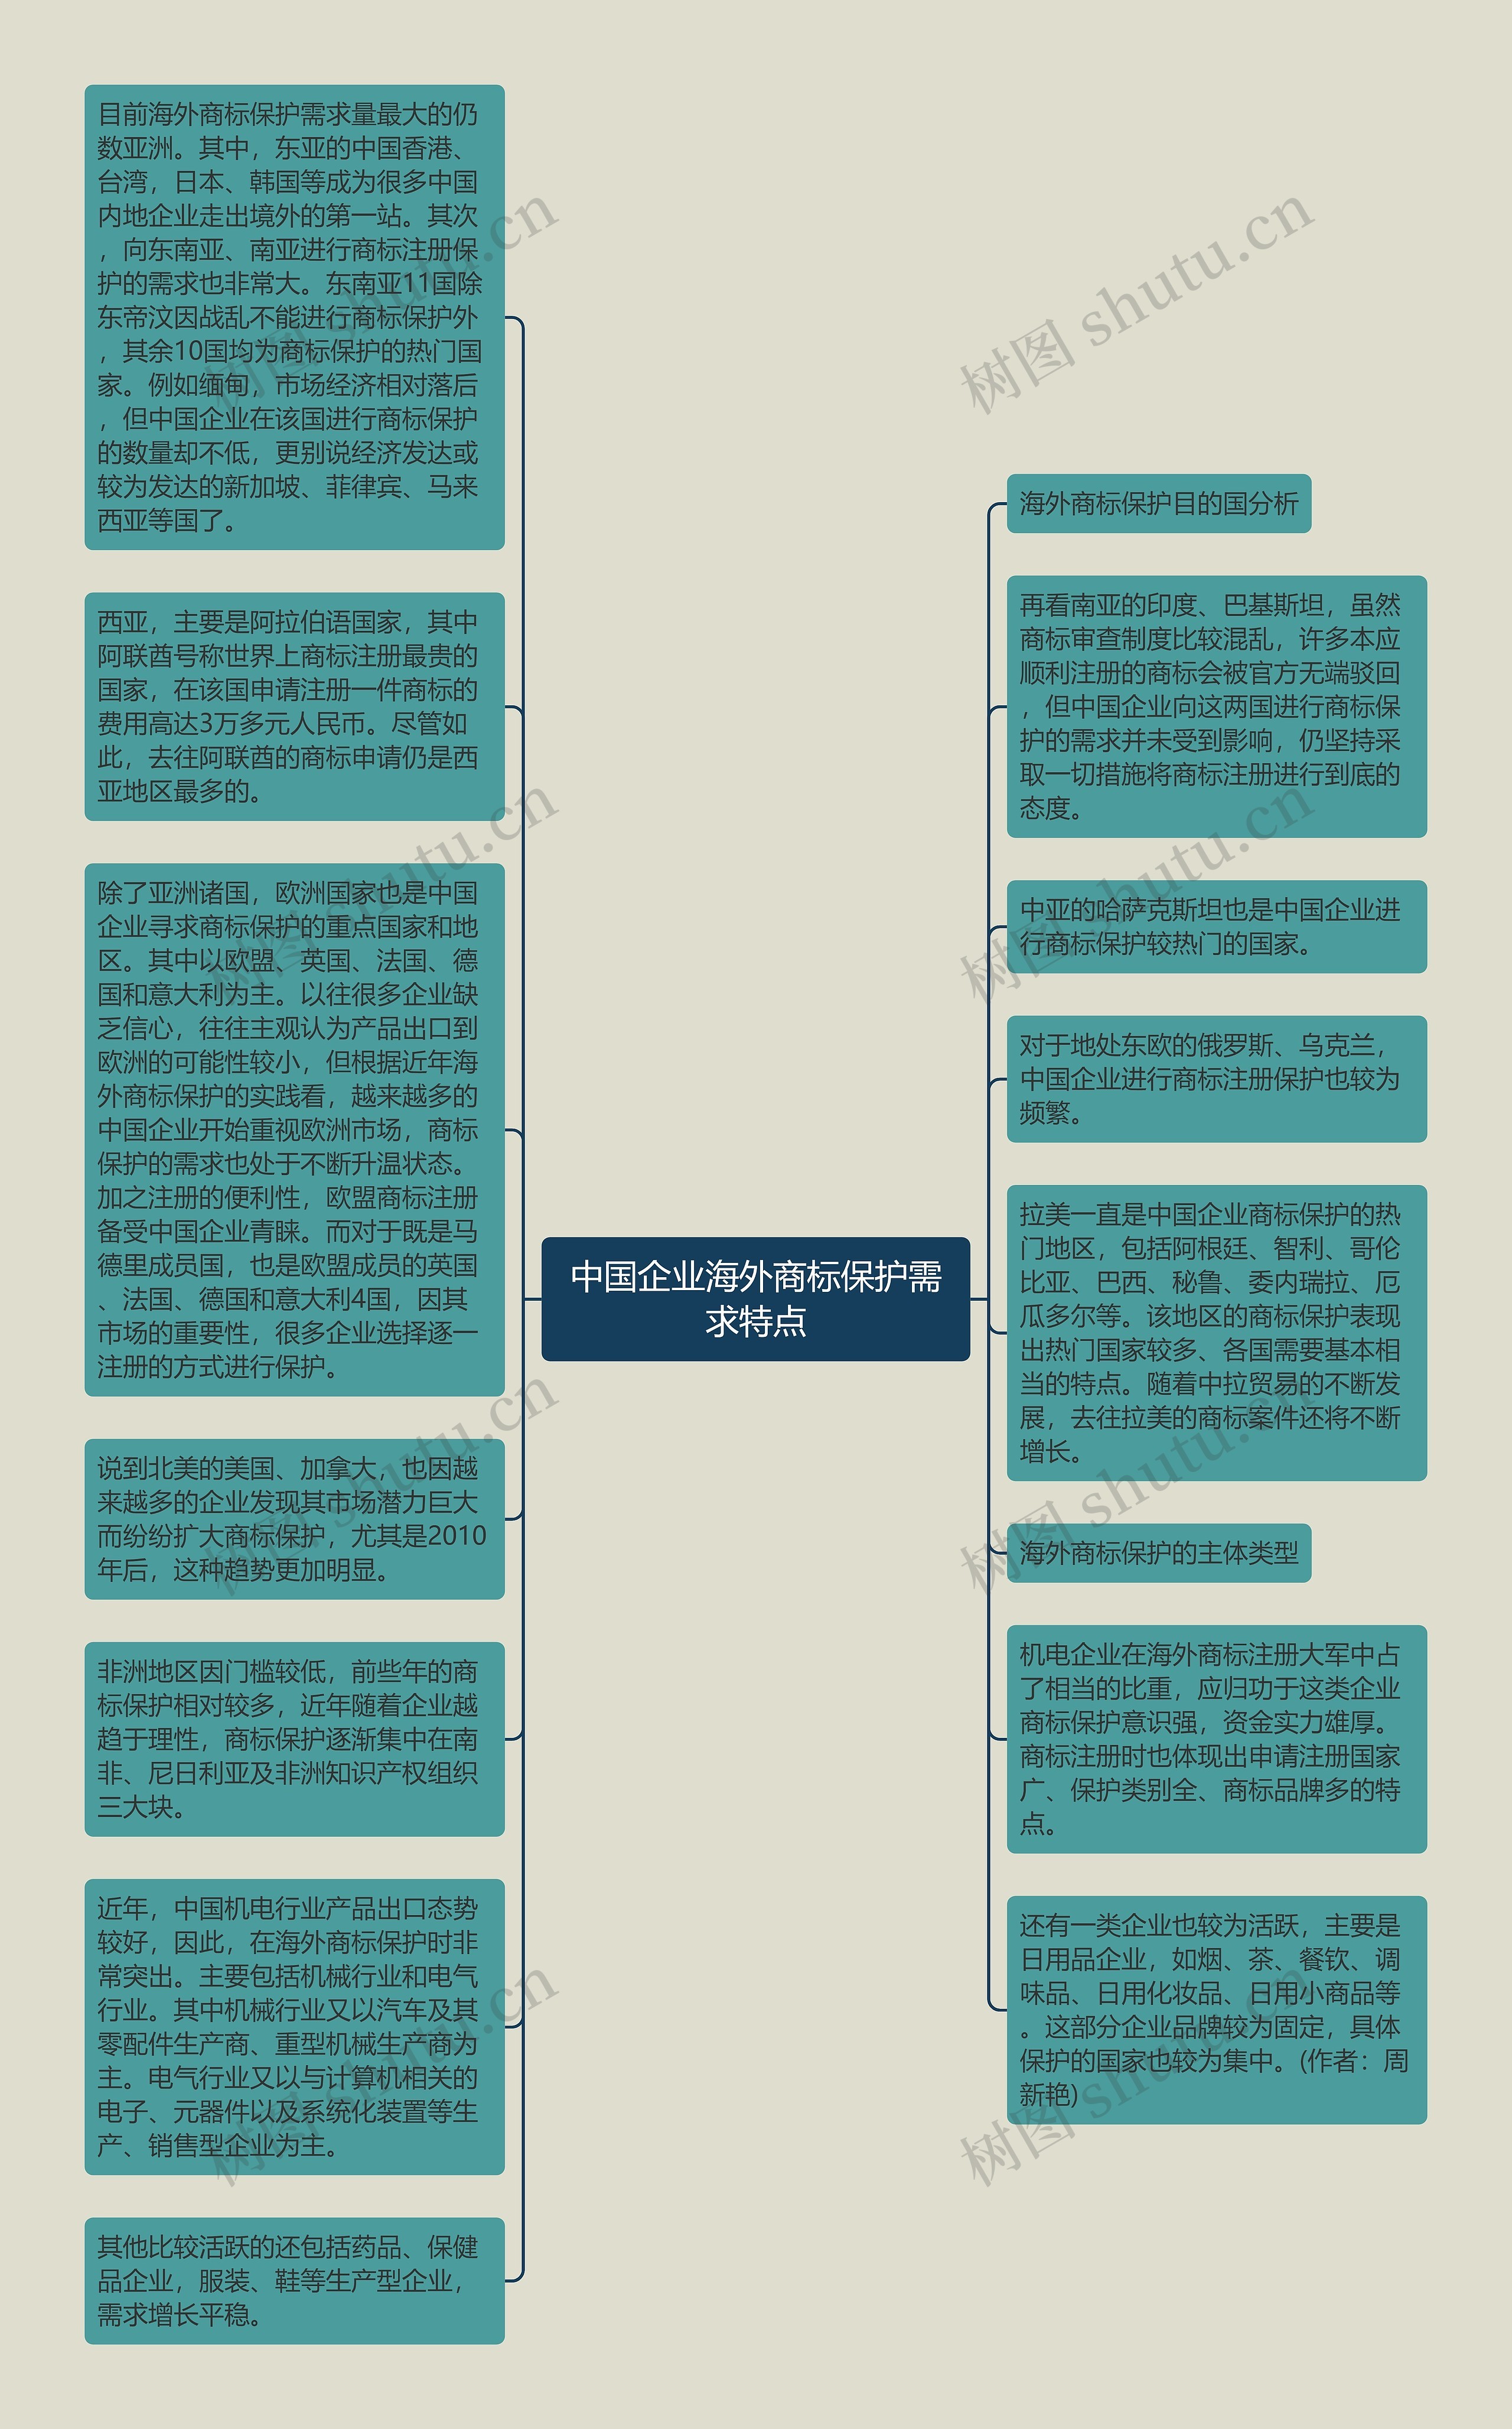 中国企业海外商标保护需求特点思维导图